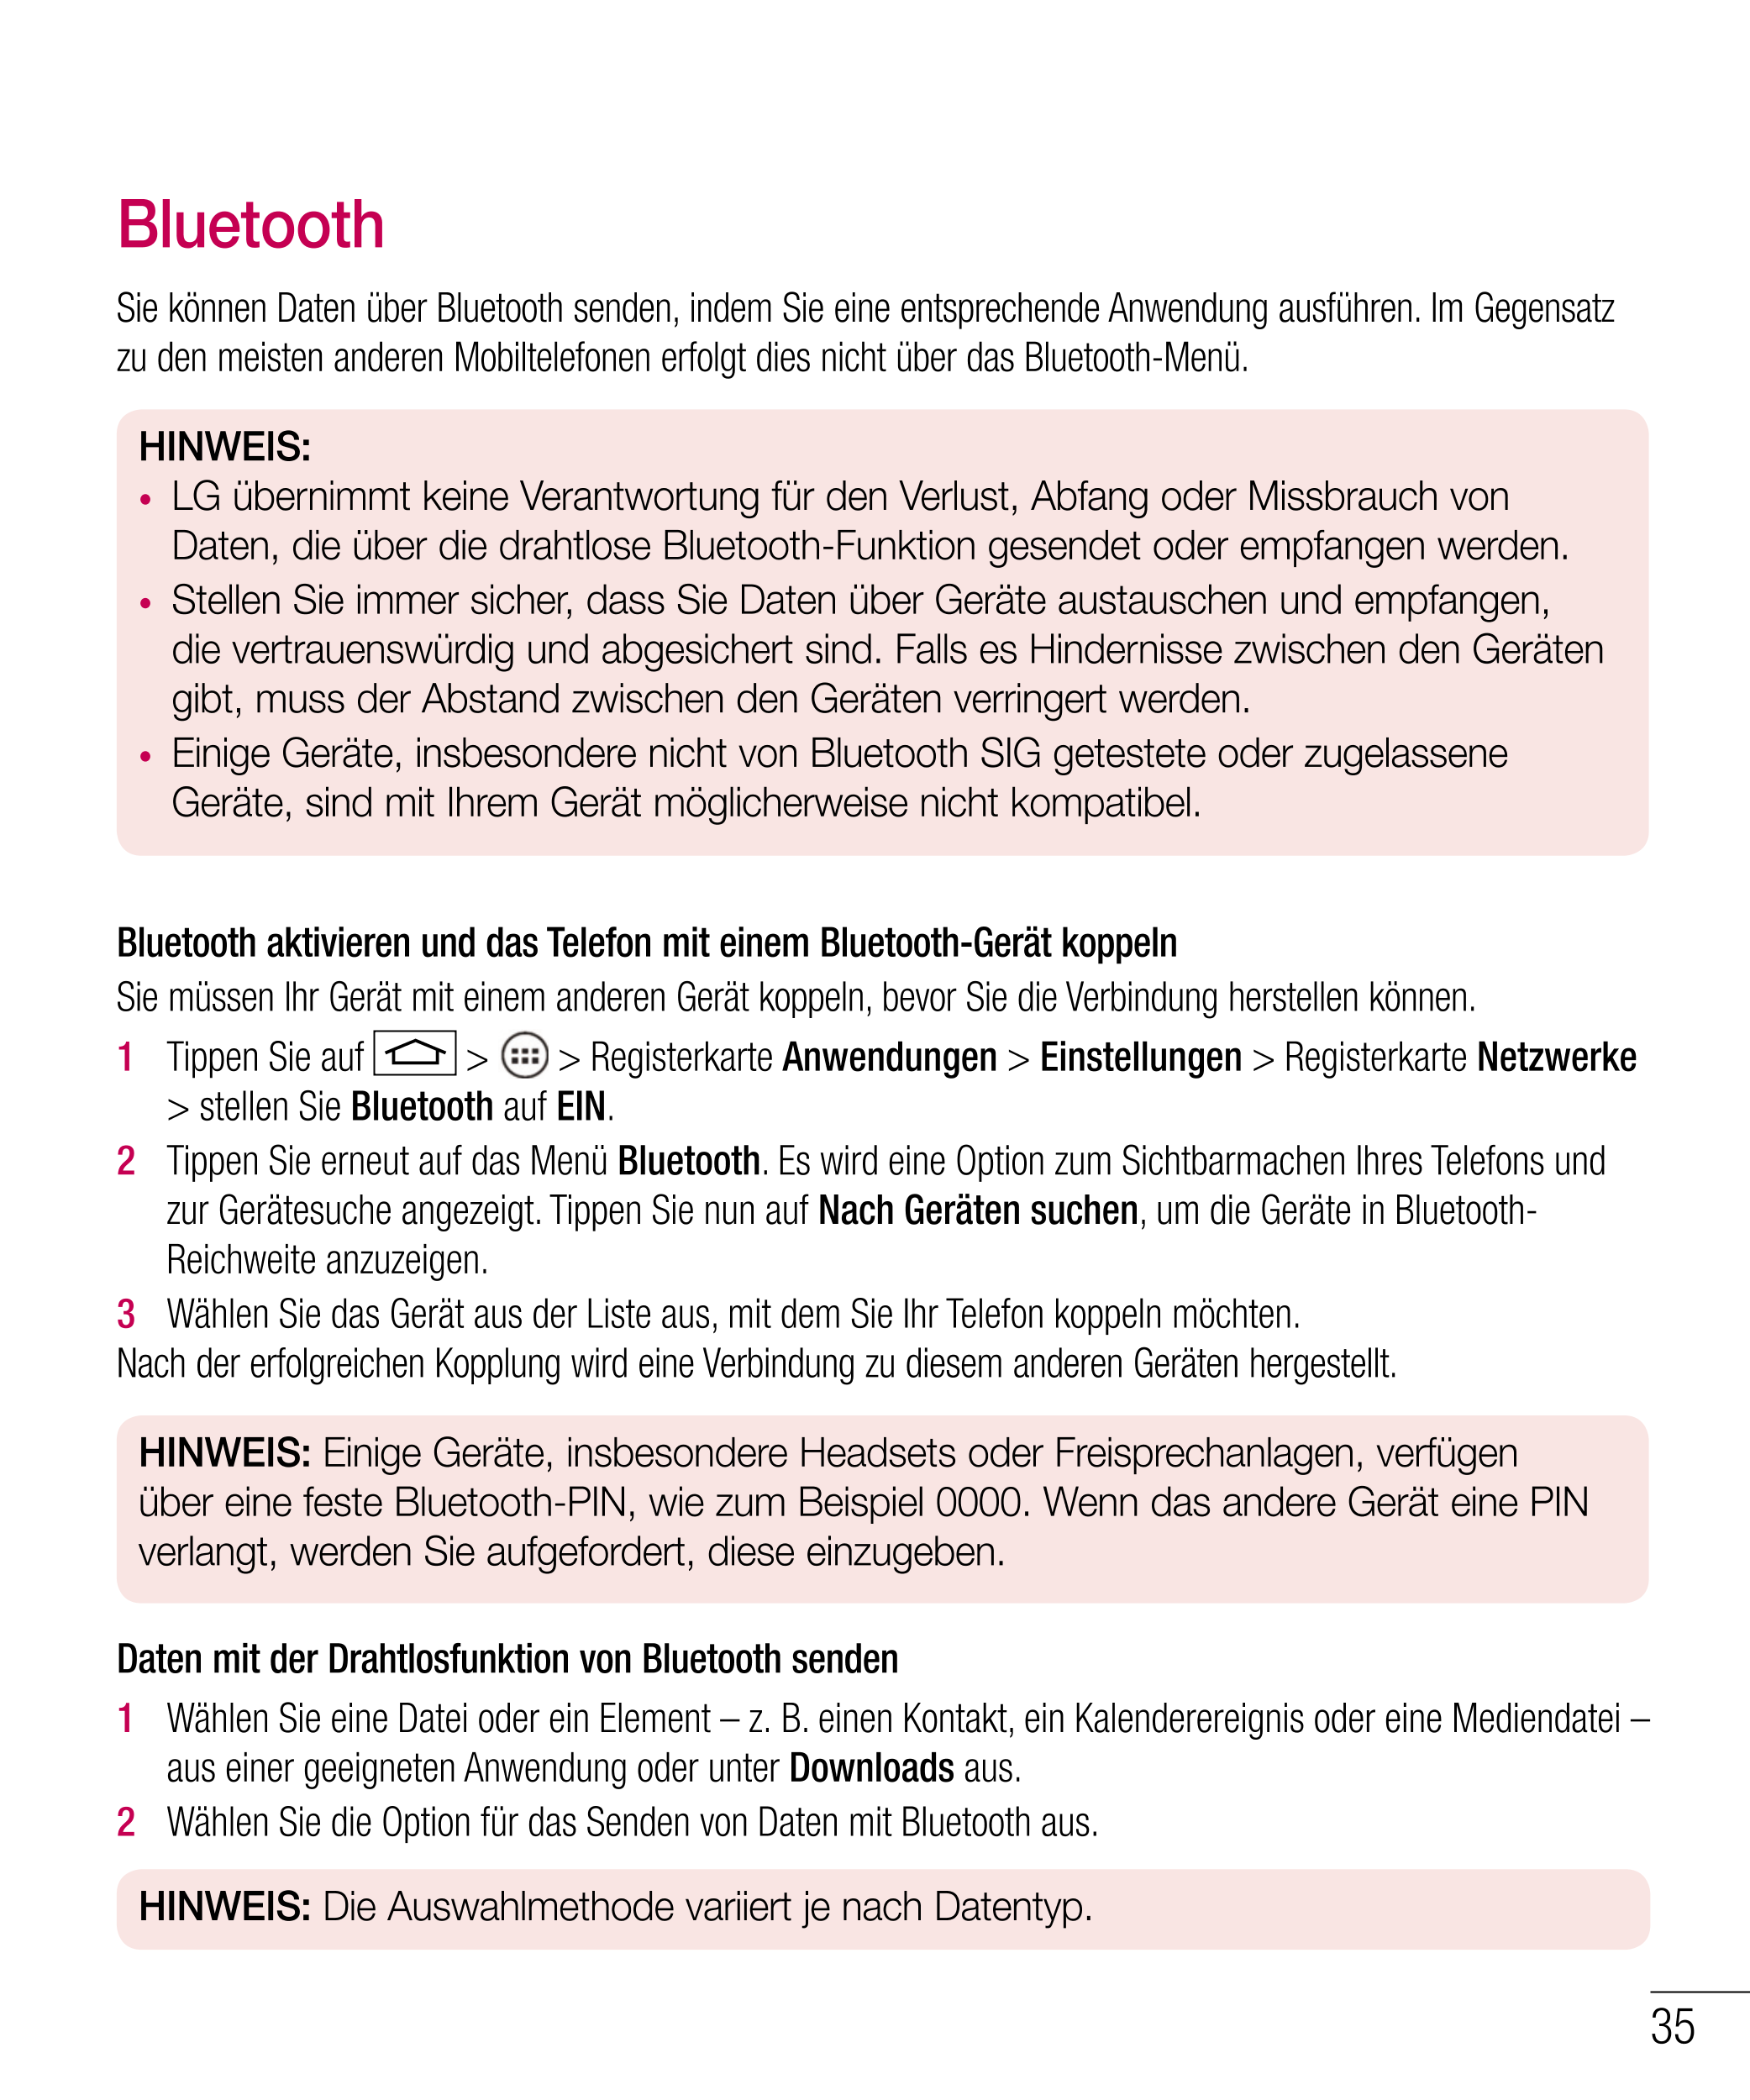 Bluetooth
Sie können Daten über Bluetooth senden, indem Sie eine entsprechende Anwendung ausführen. Im Gegensatz 
zu den meisten